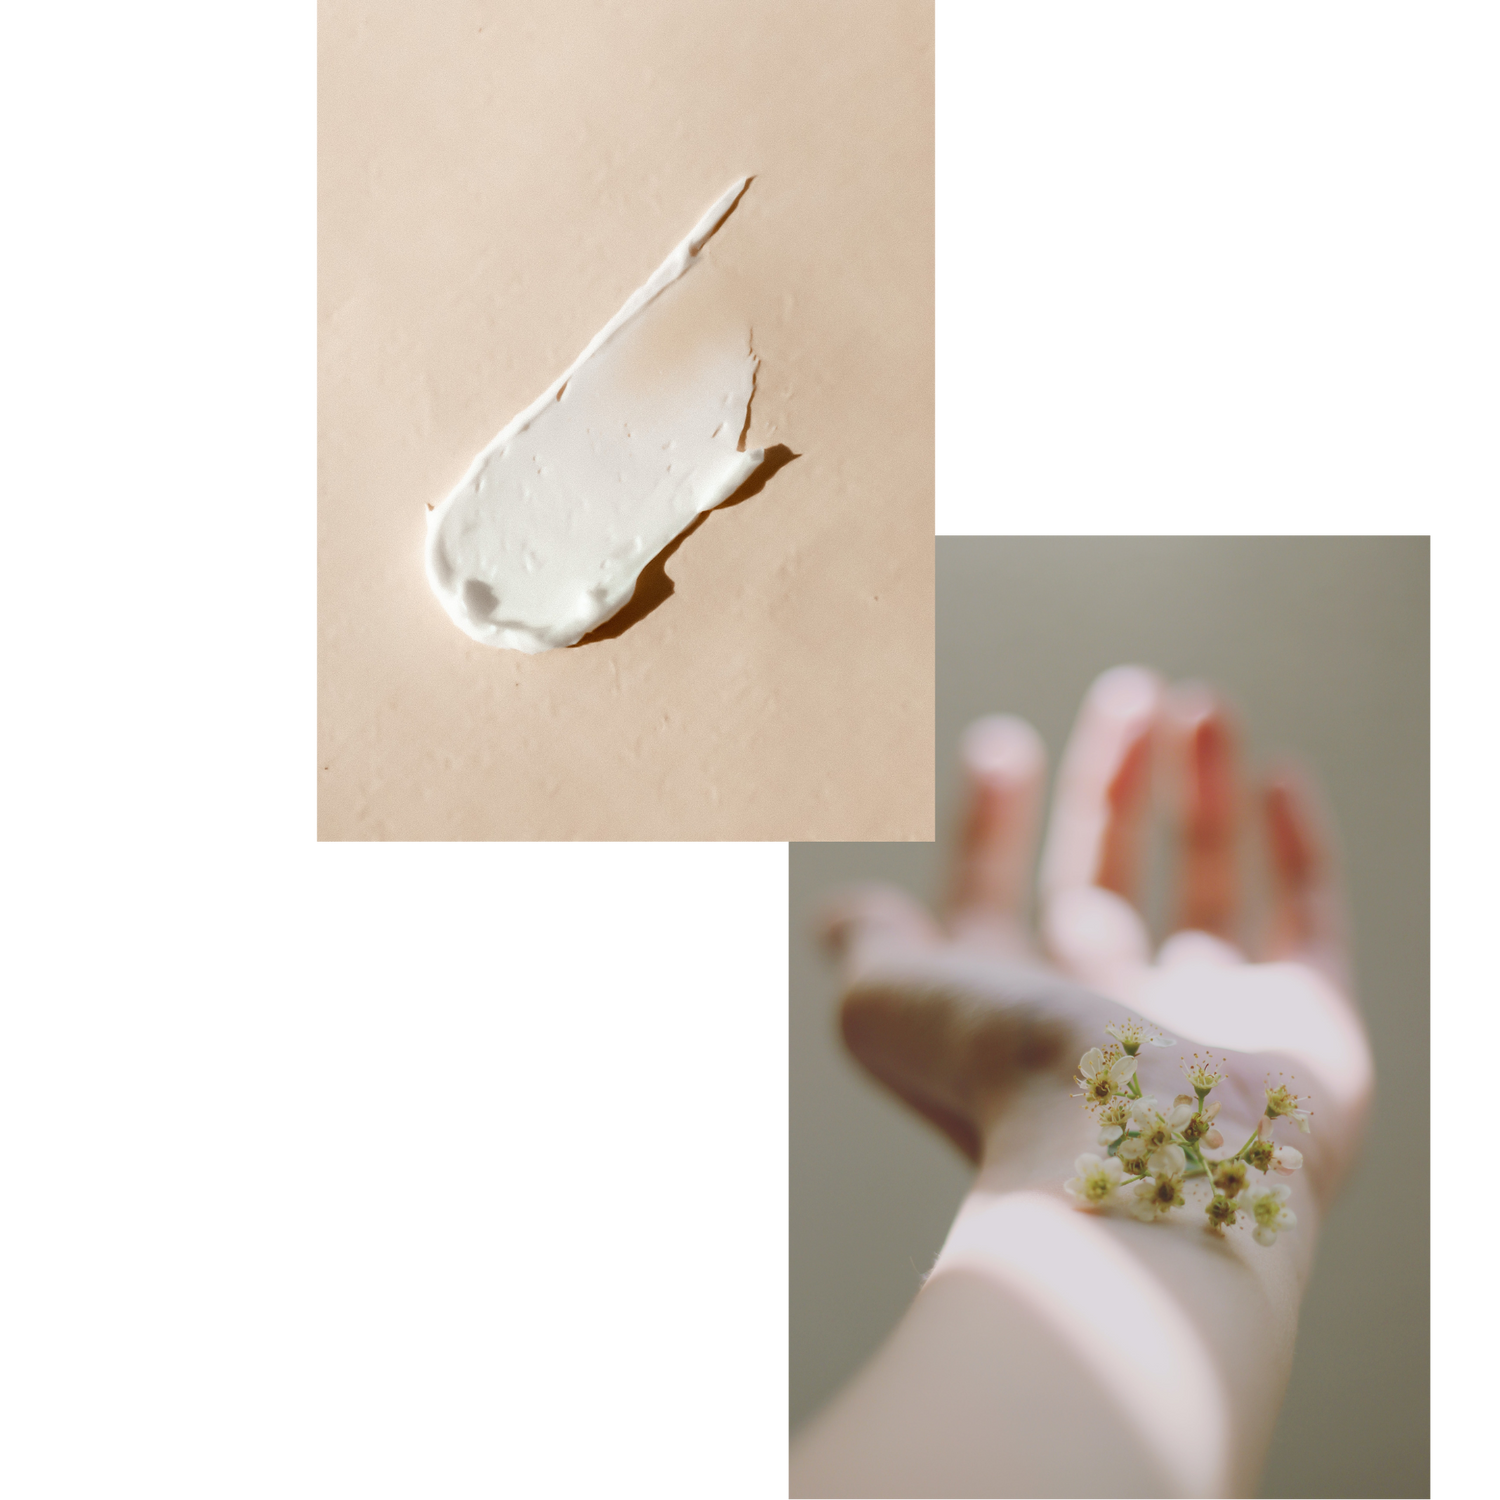 En kollage af billeder: Den første er af et creme produkt smurt ud på en beige underlag. Det andet er af en udstrakt arm, hvor en blomst er placeret på underarmen.